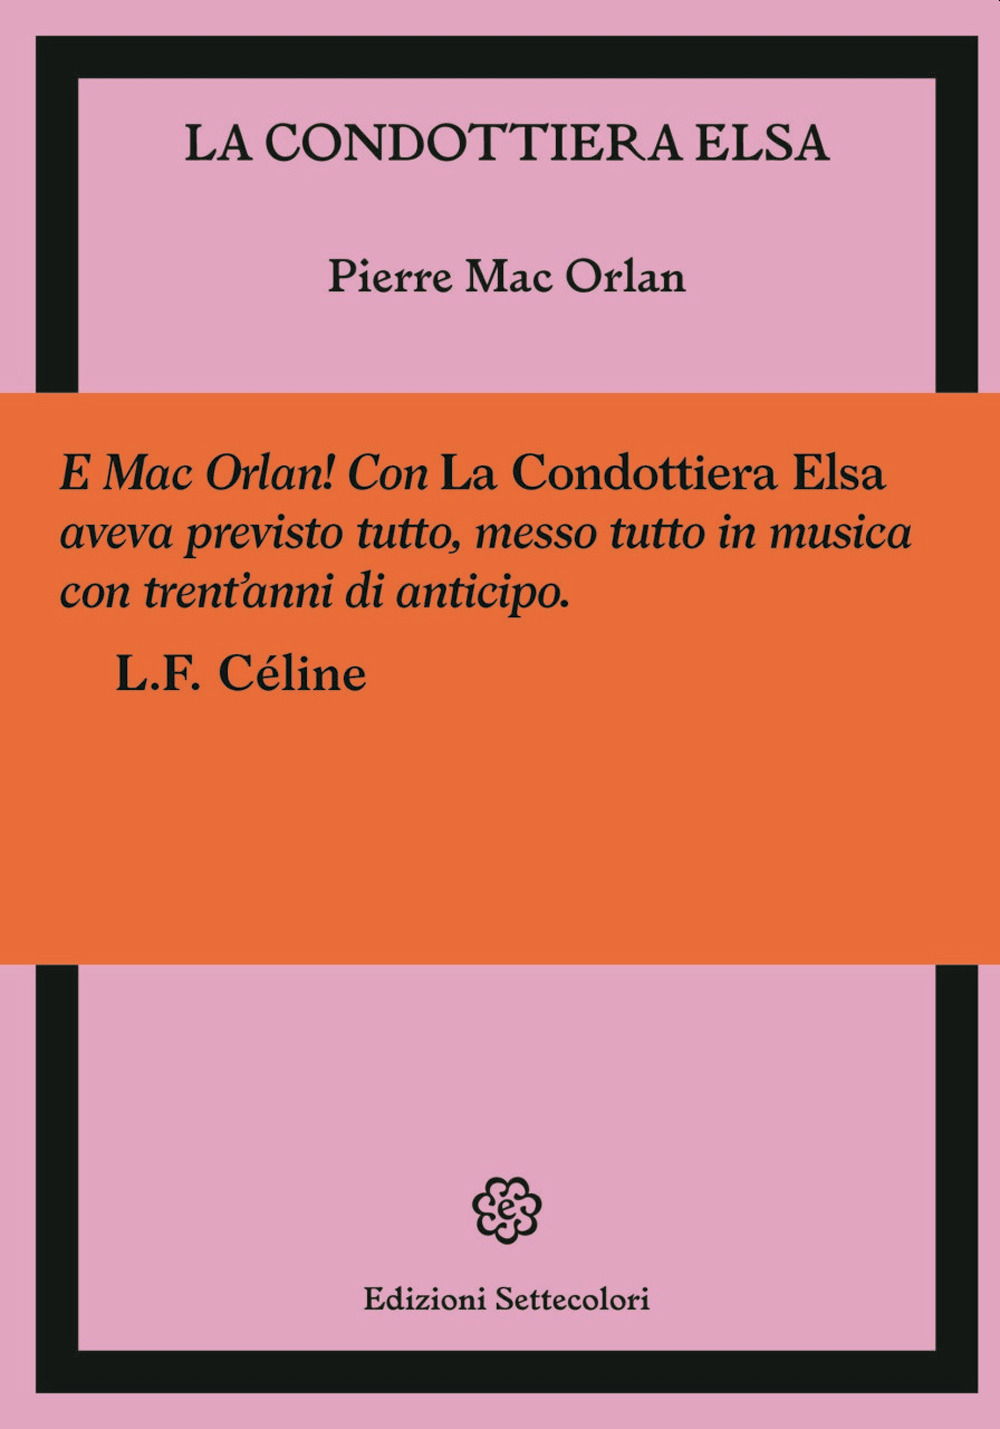 Libri Mac Orlan Pierre - La Condottiera Elsa NUOVO SIGILLATO, EDIZIONE DEL 31/03/2023 SUBITO DISPONIBILE